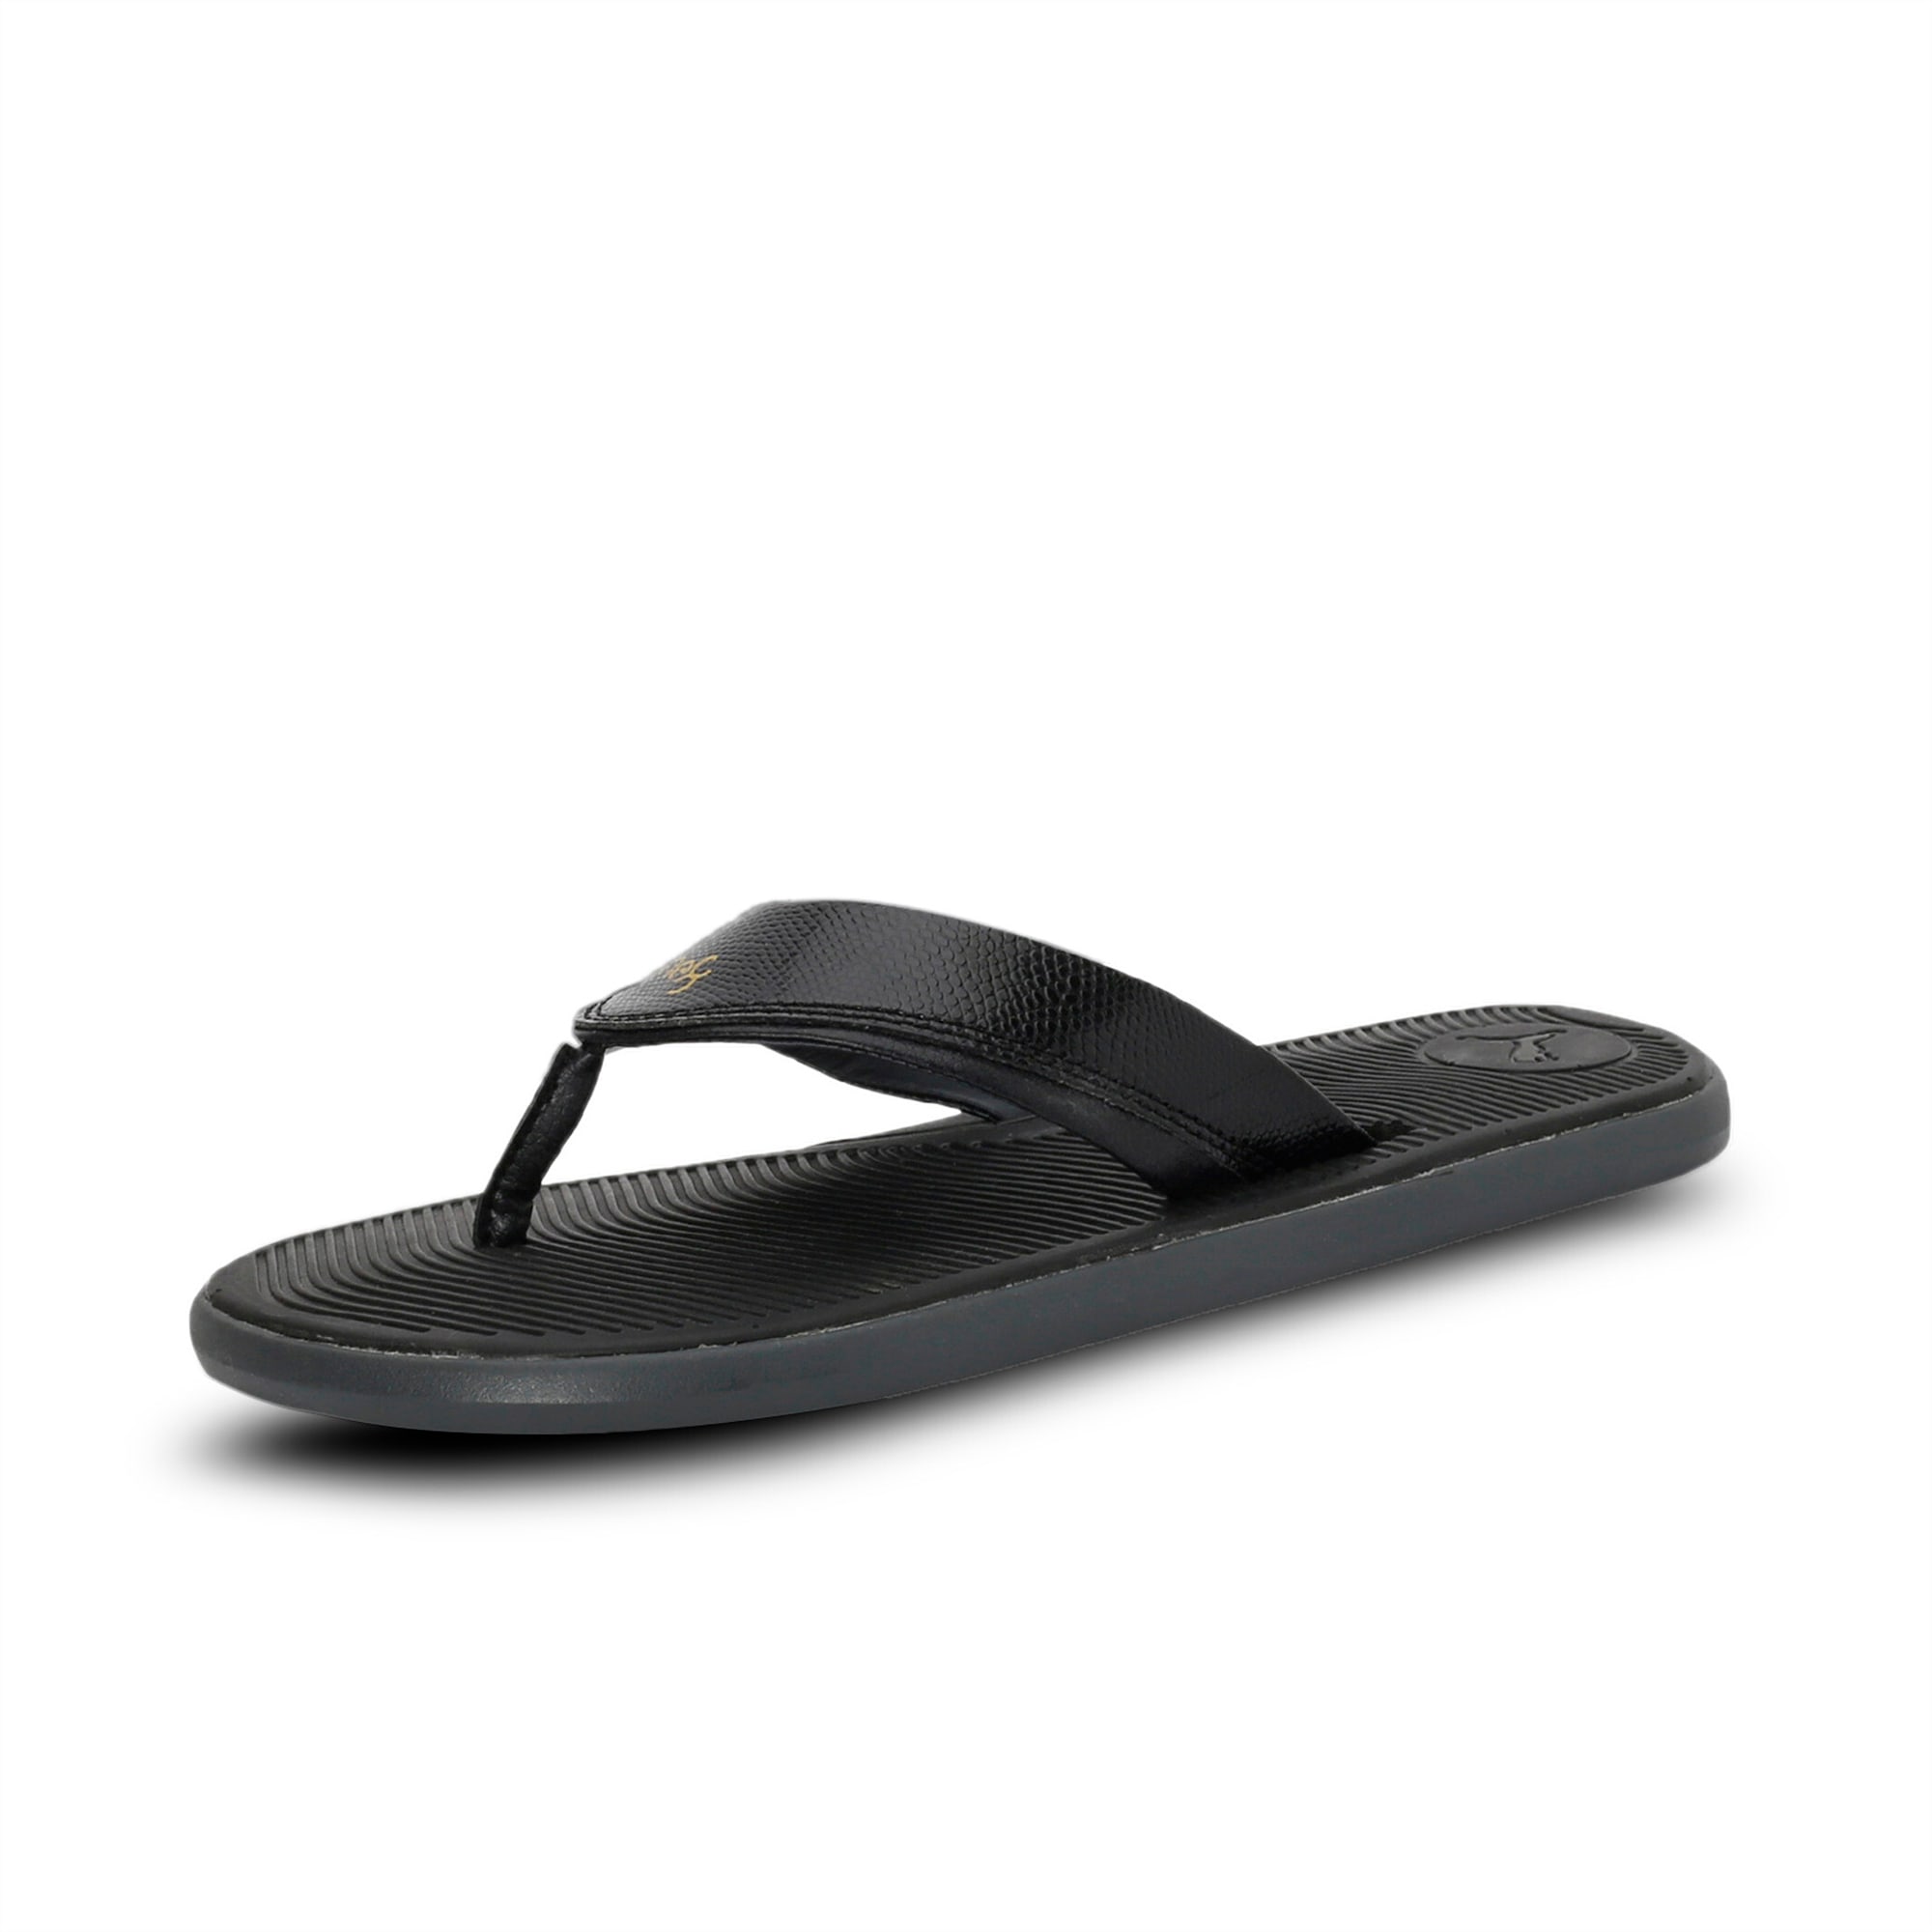 puma new model sandals